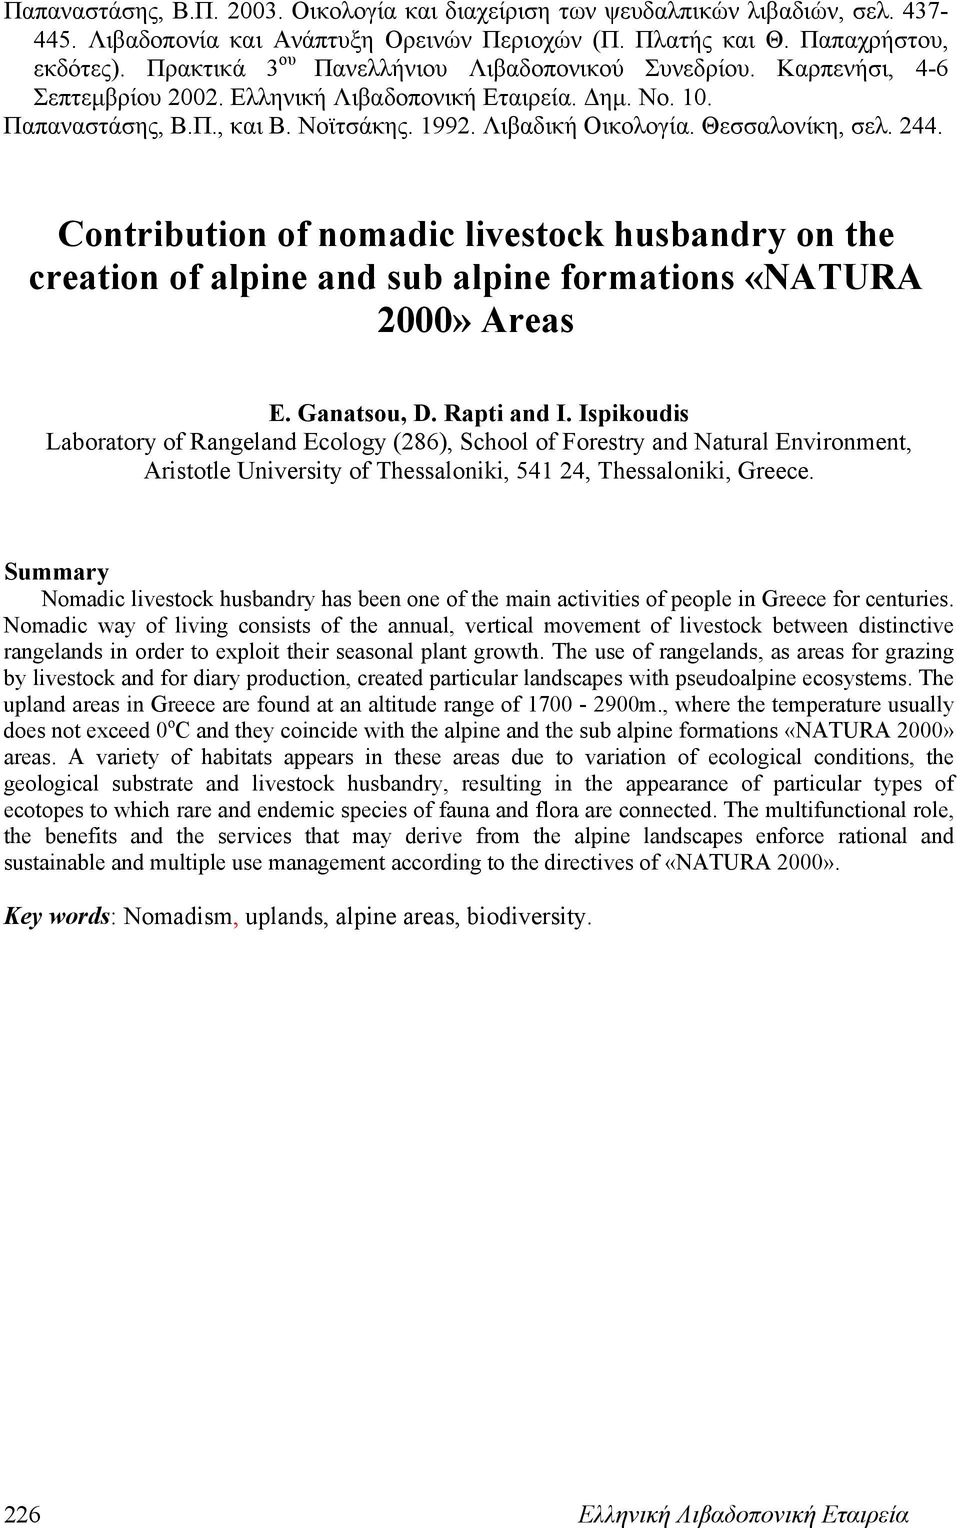 Θεσσαλονίκη, σελ. 244. Contribution of nomadic livestock husbandry on the creation of alpine and sub alpine formations «NATURA 2000» Areas E. Ganatsou, D. Rapti and I.